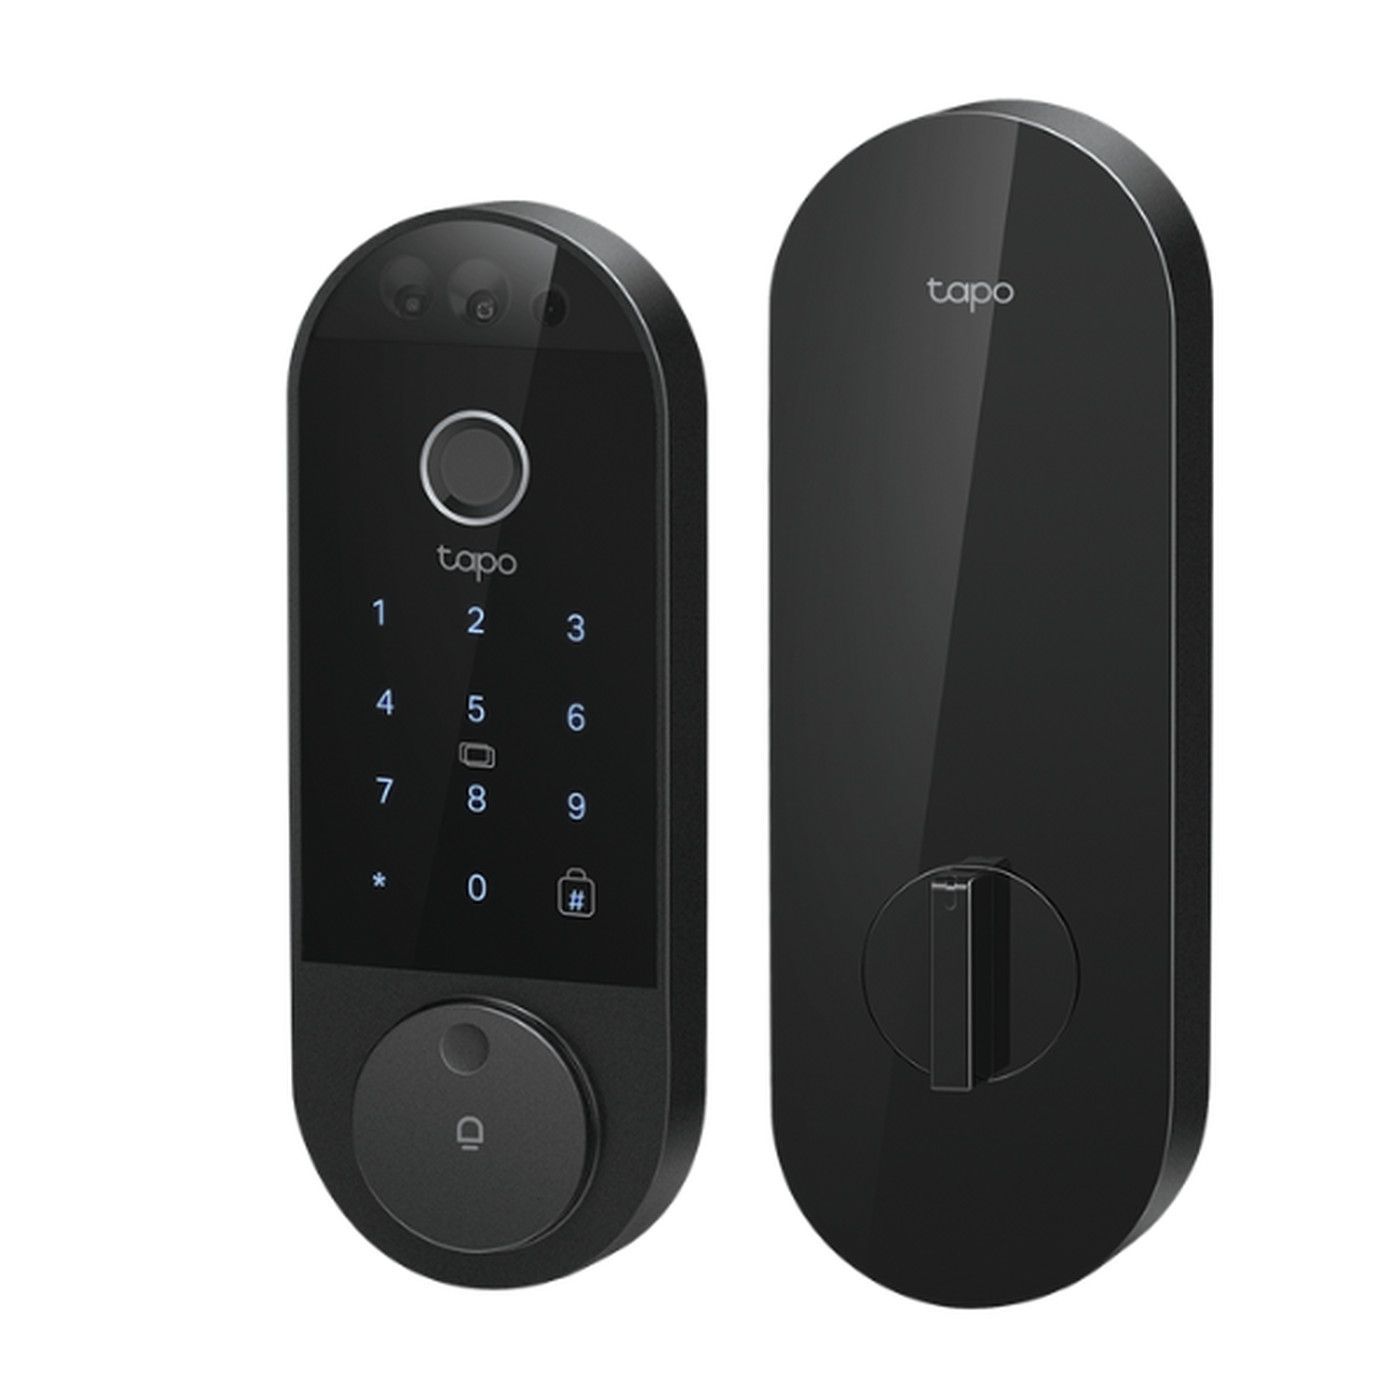 Tapo Smart Video Door Lock